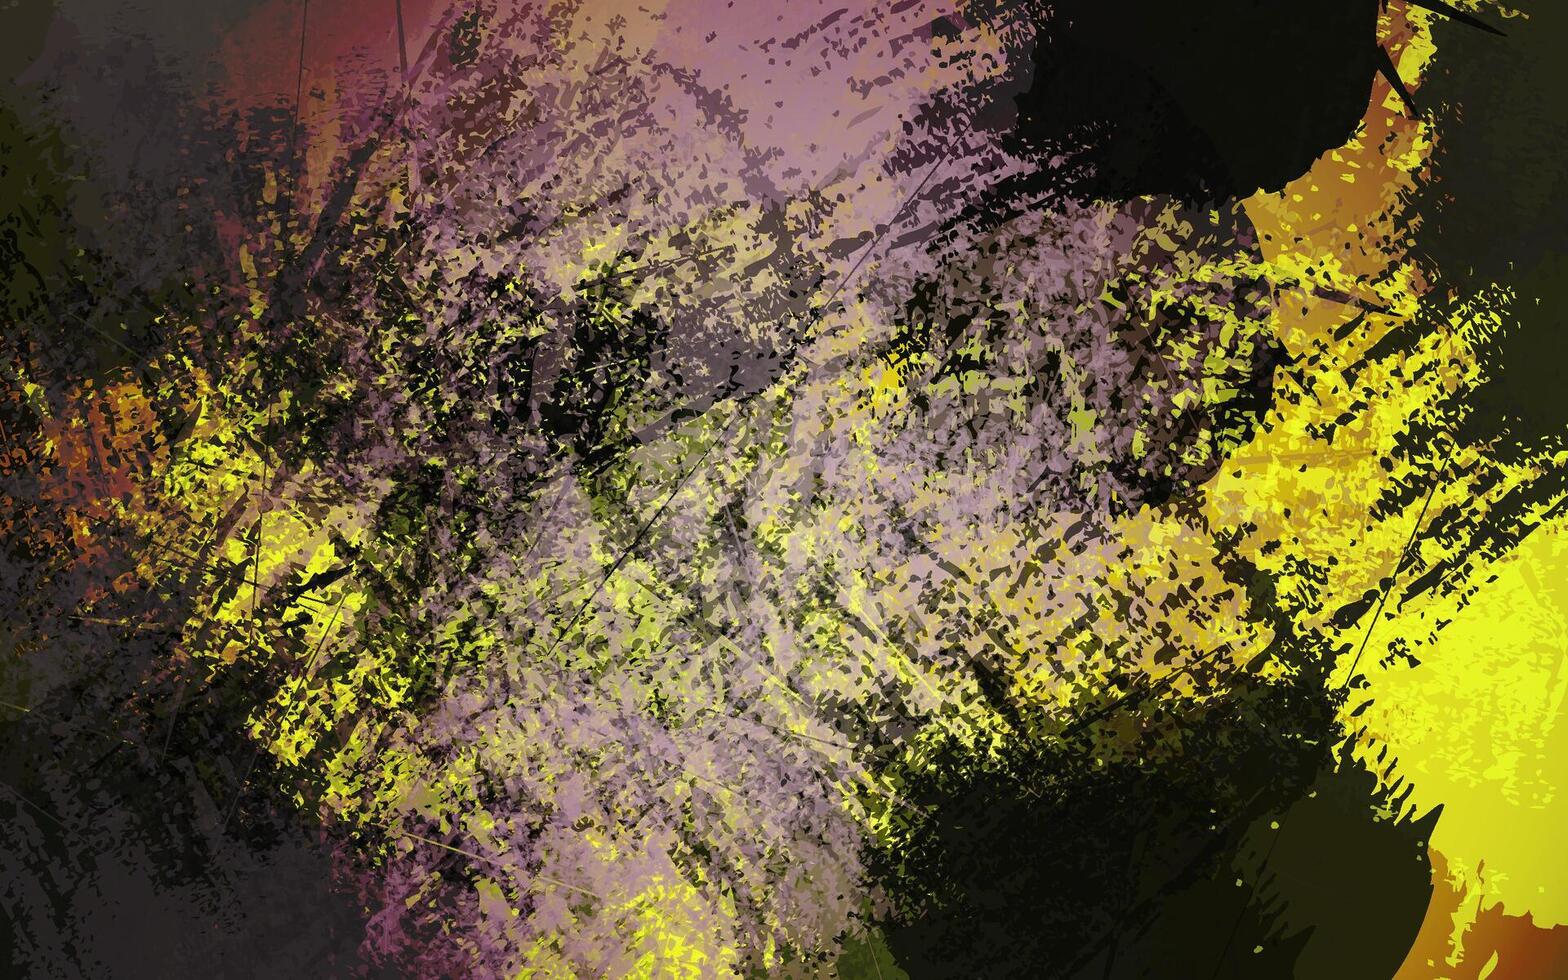 fondo de color negro y amarillo de textura grunge abstracta vector